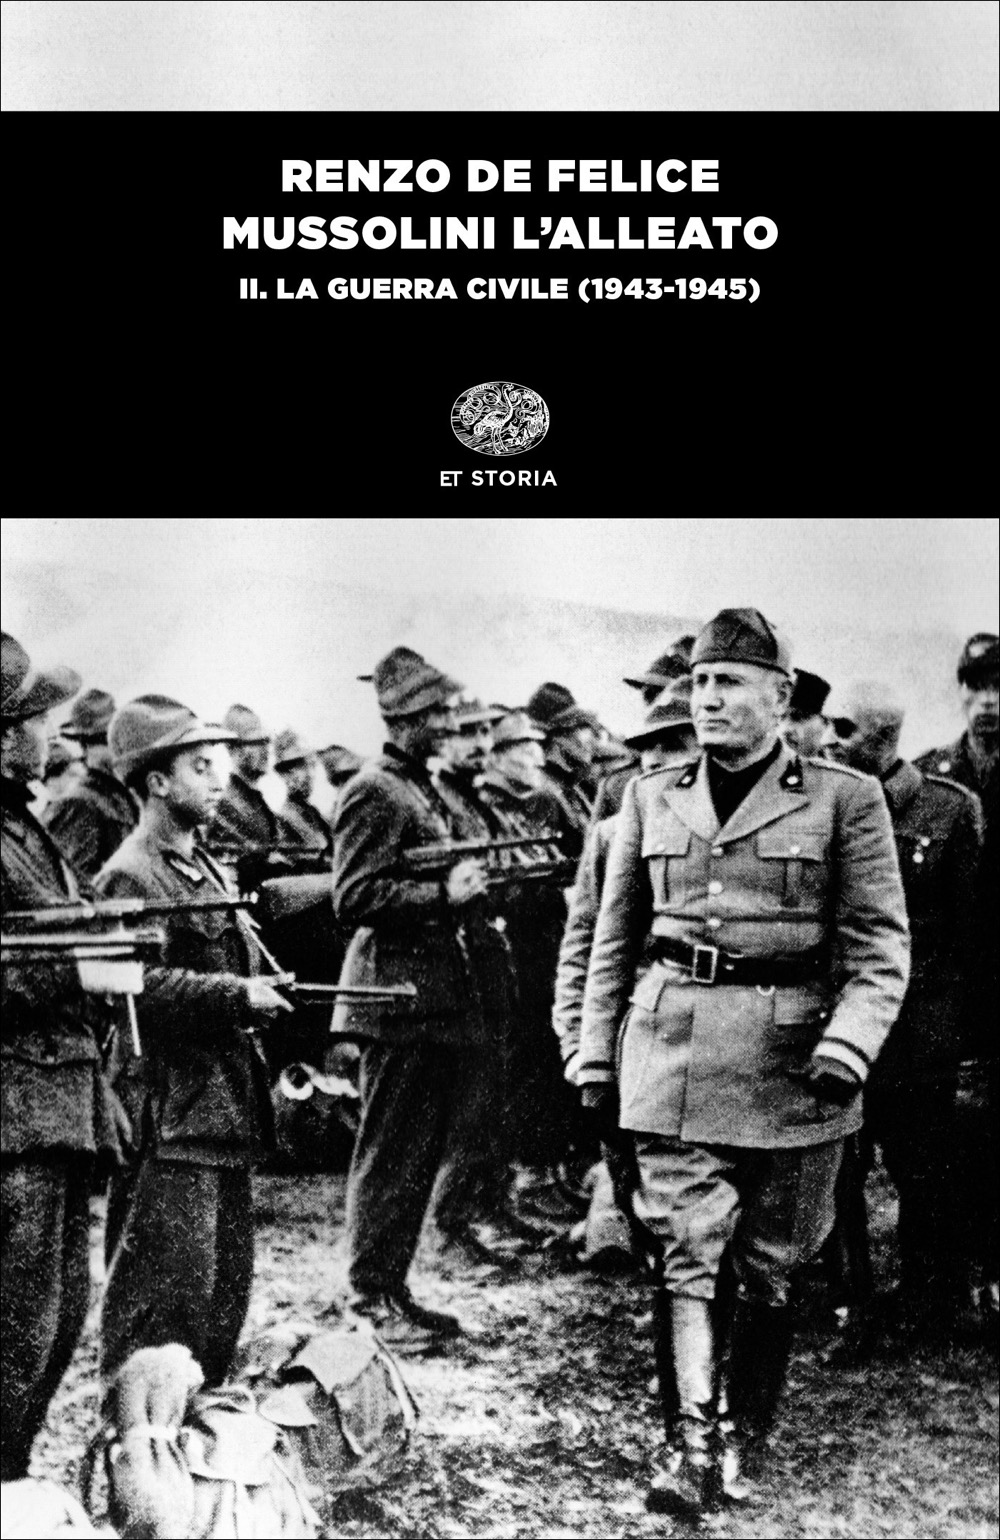 Mussolini l’alleato. II. La guerra civile (19431945), Renzo De Felice. Giulio Einaudi editore